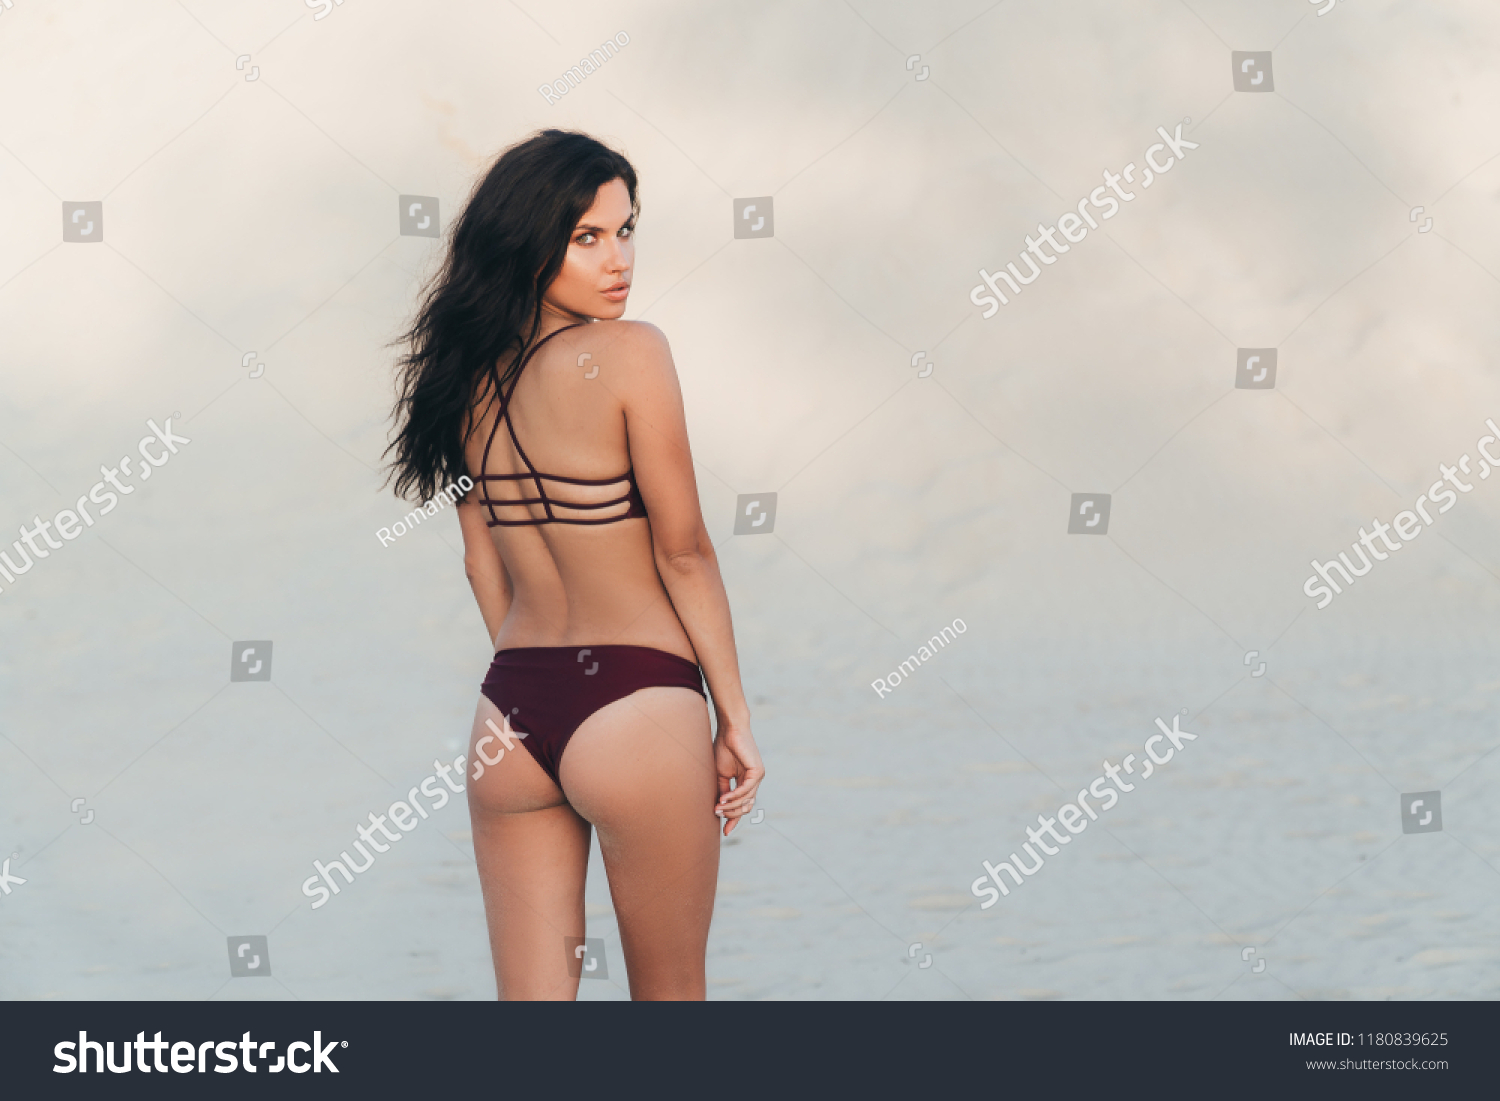 Юлия ахмедова в нижнем белье купальнике